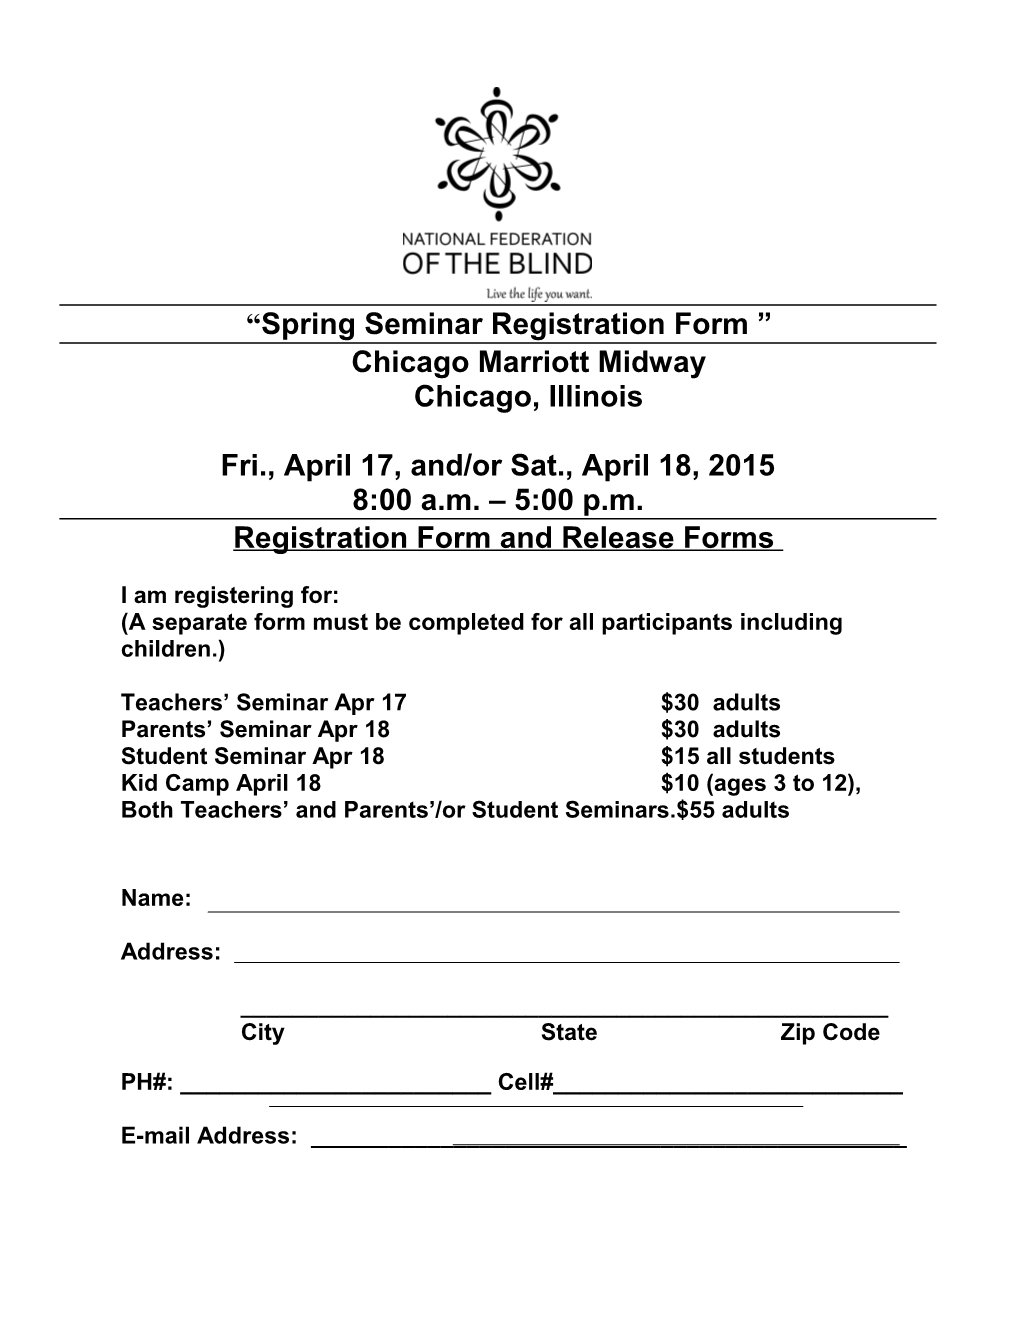 Spring Seminar Registration Form